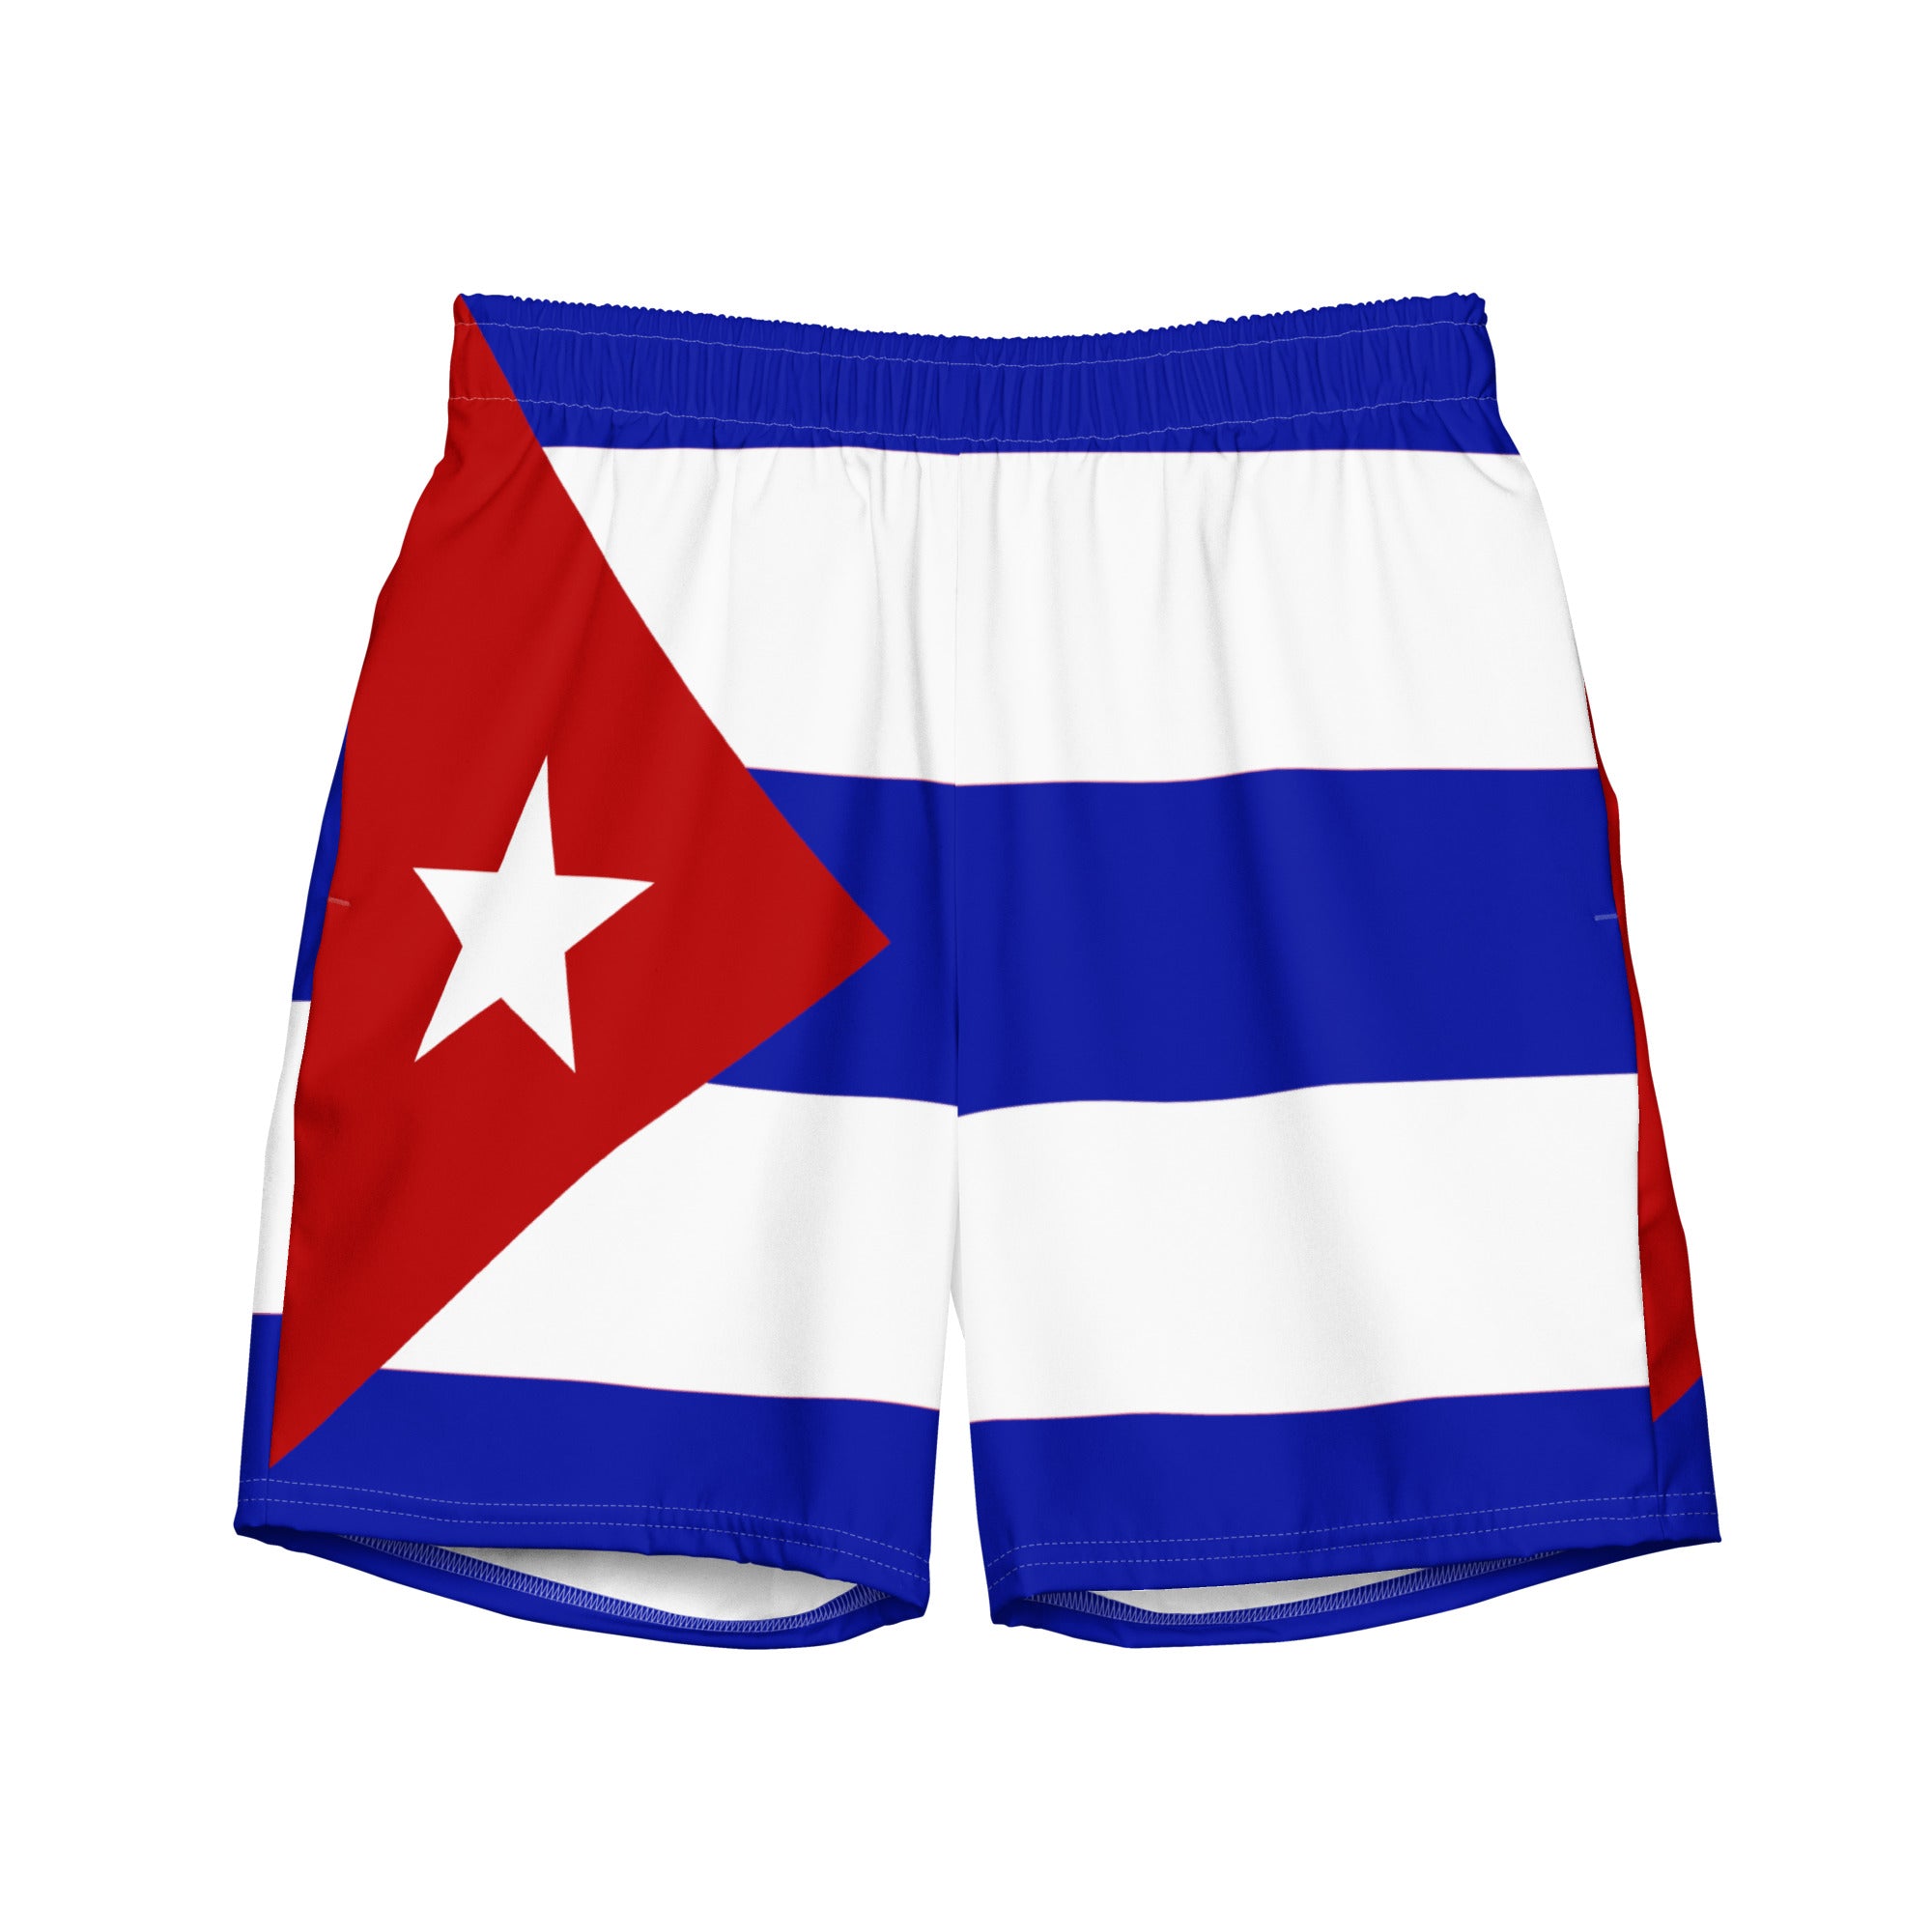 Cuba Flag - Men's swim trunks